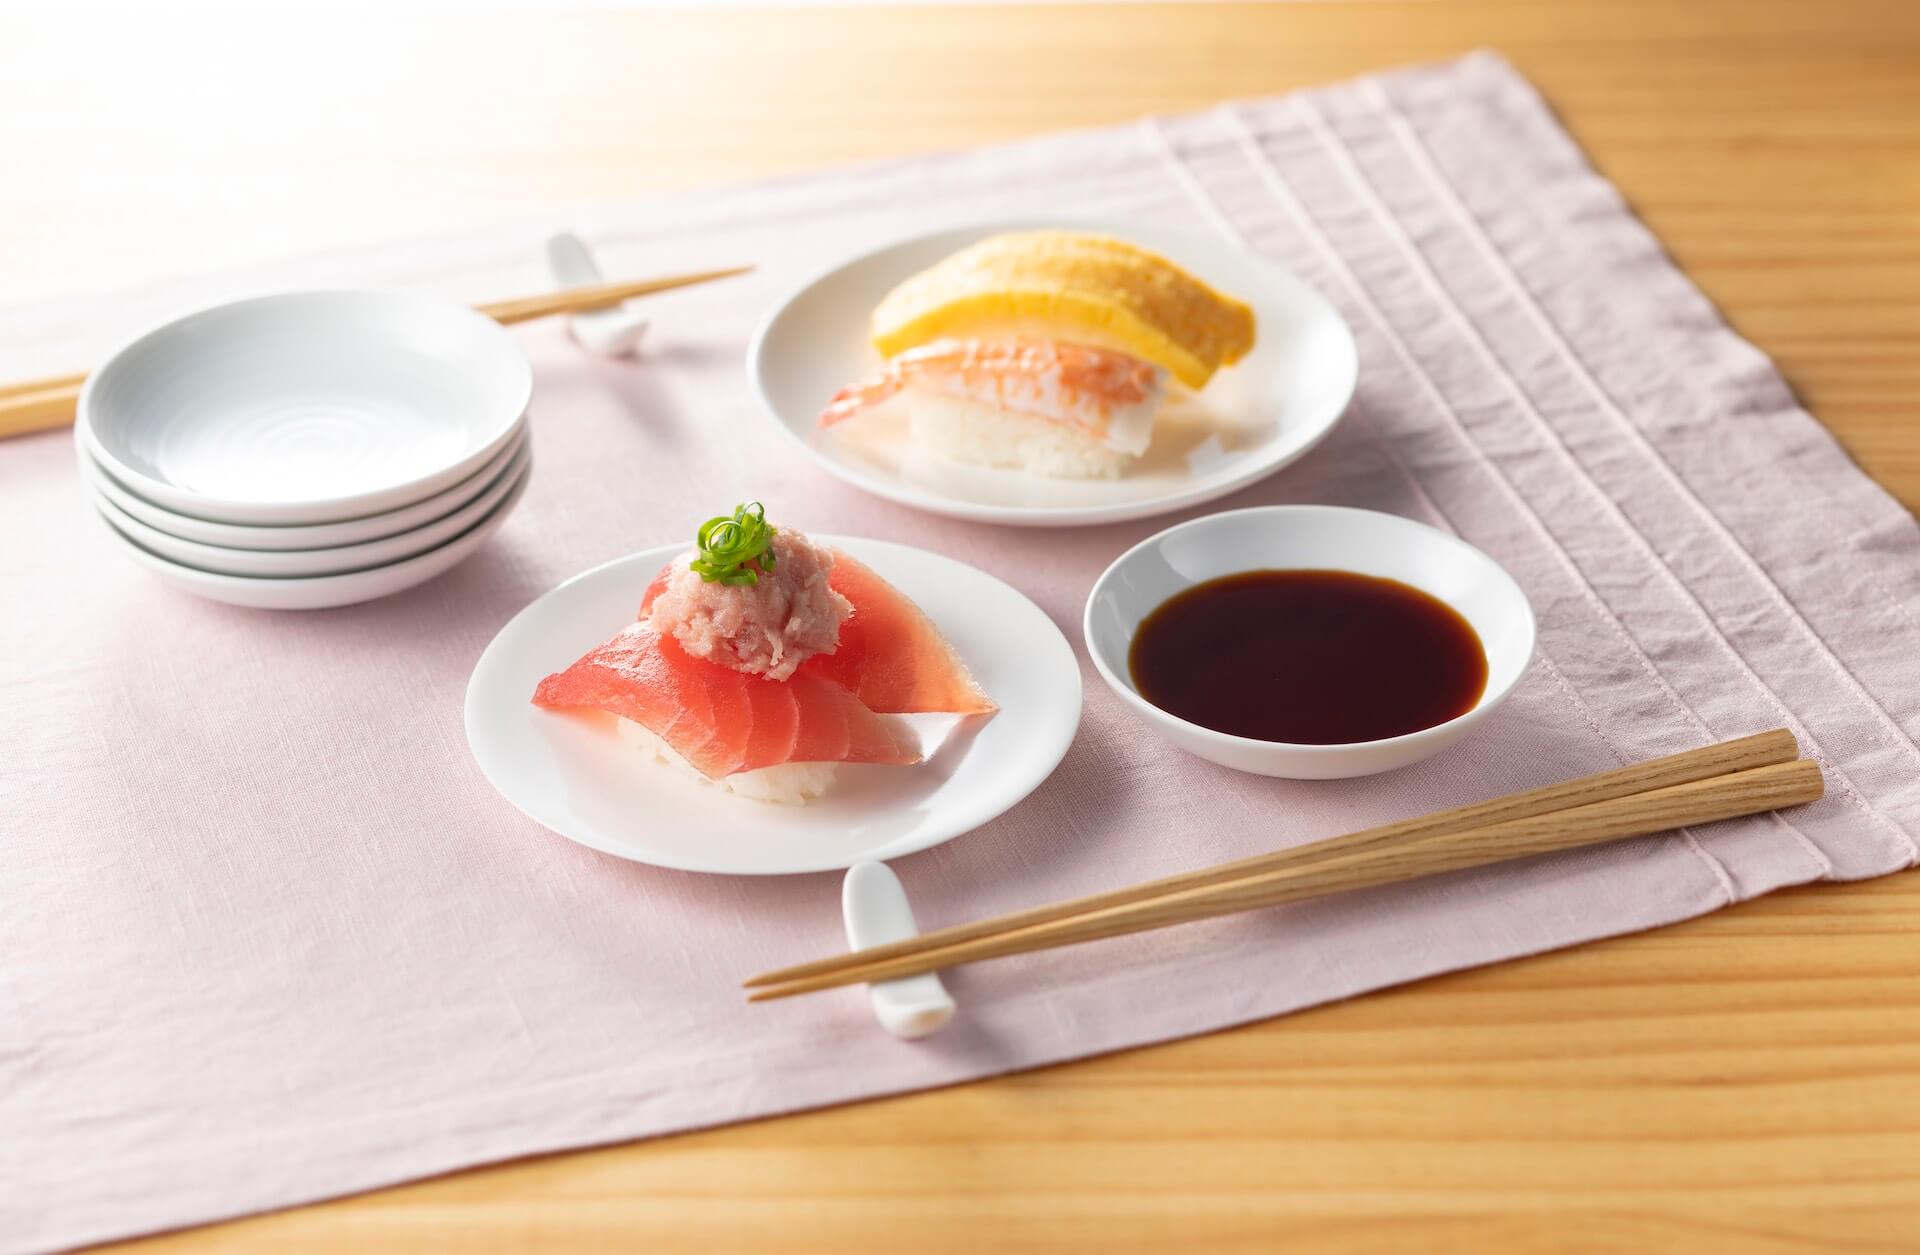 おうちで手作りはま寿司を楽しもう！人気・贅沢ネタ11種としゃり30貫がセットになった「おうちではま寿司セット」が登場 gourmet_200424_hamazushi_03